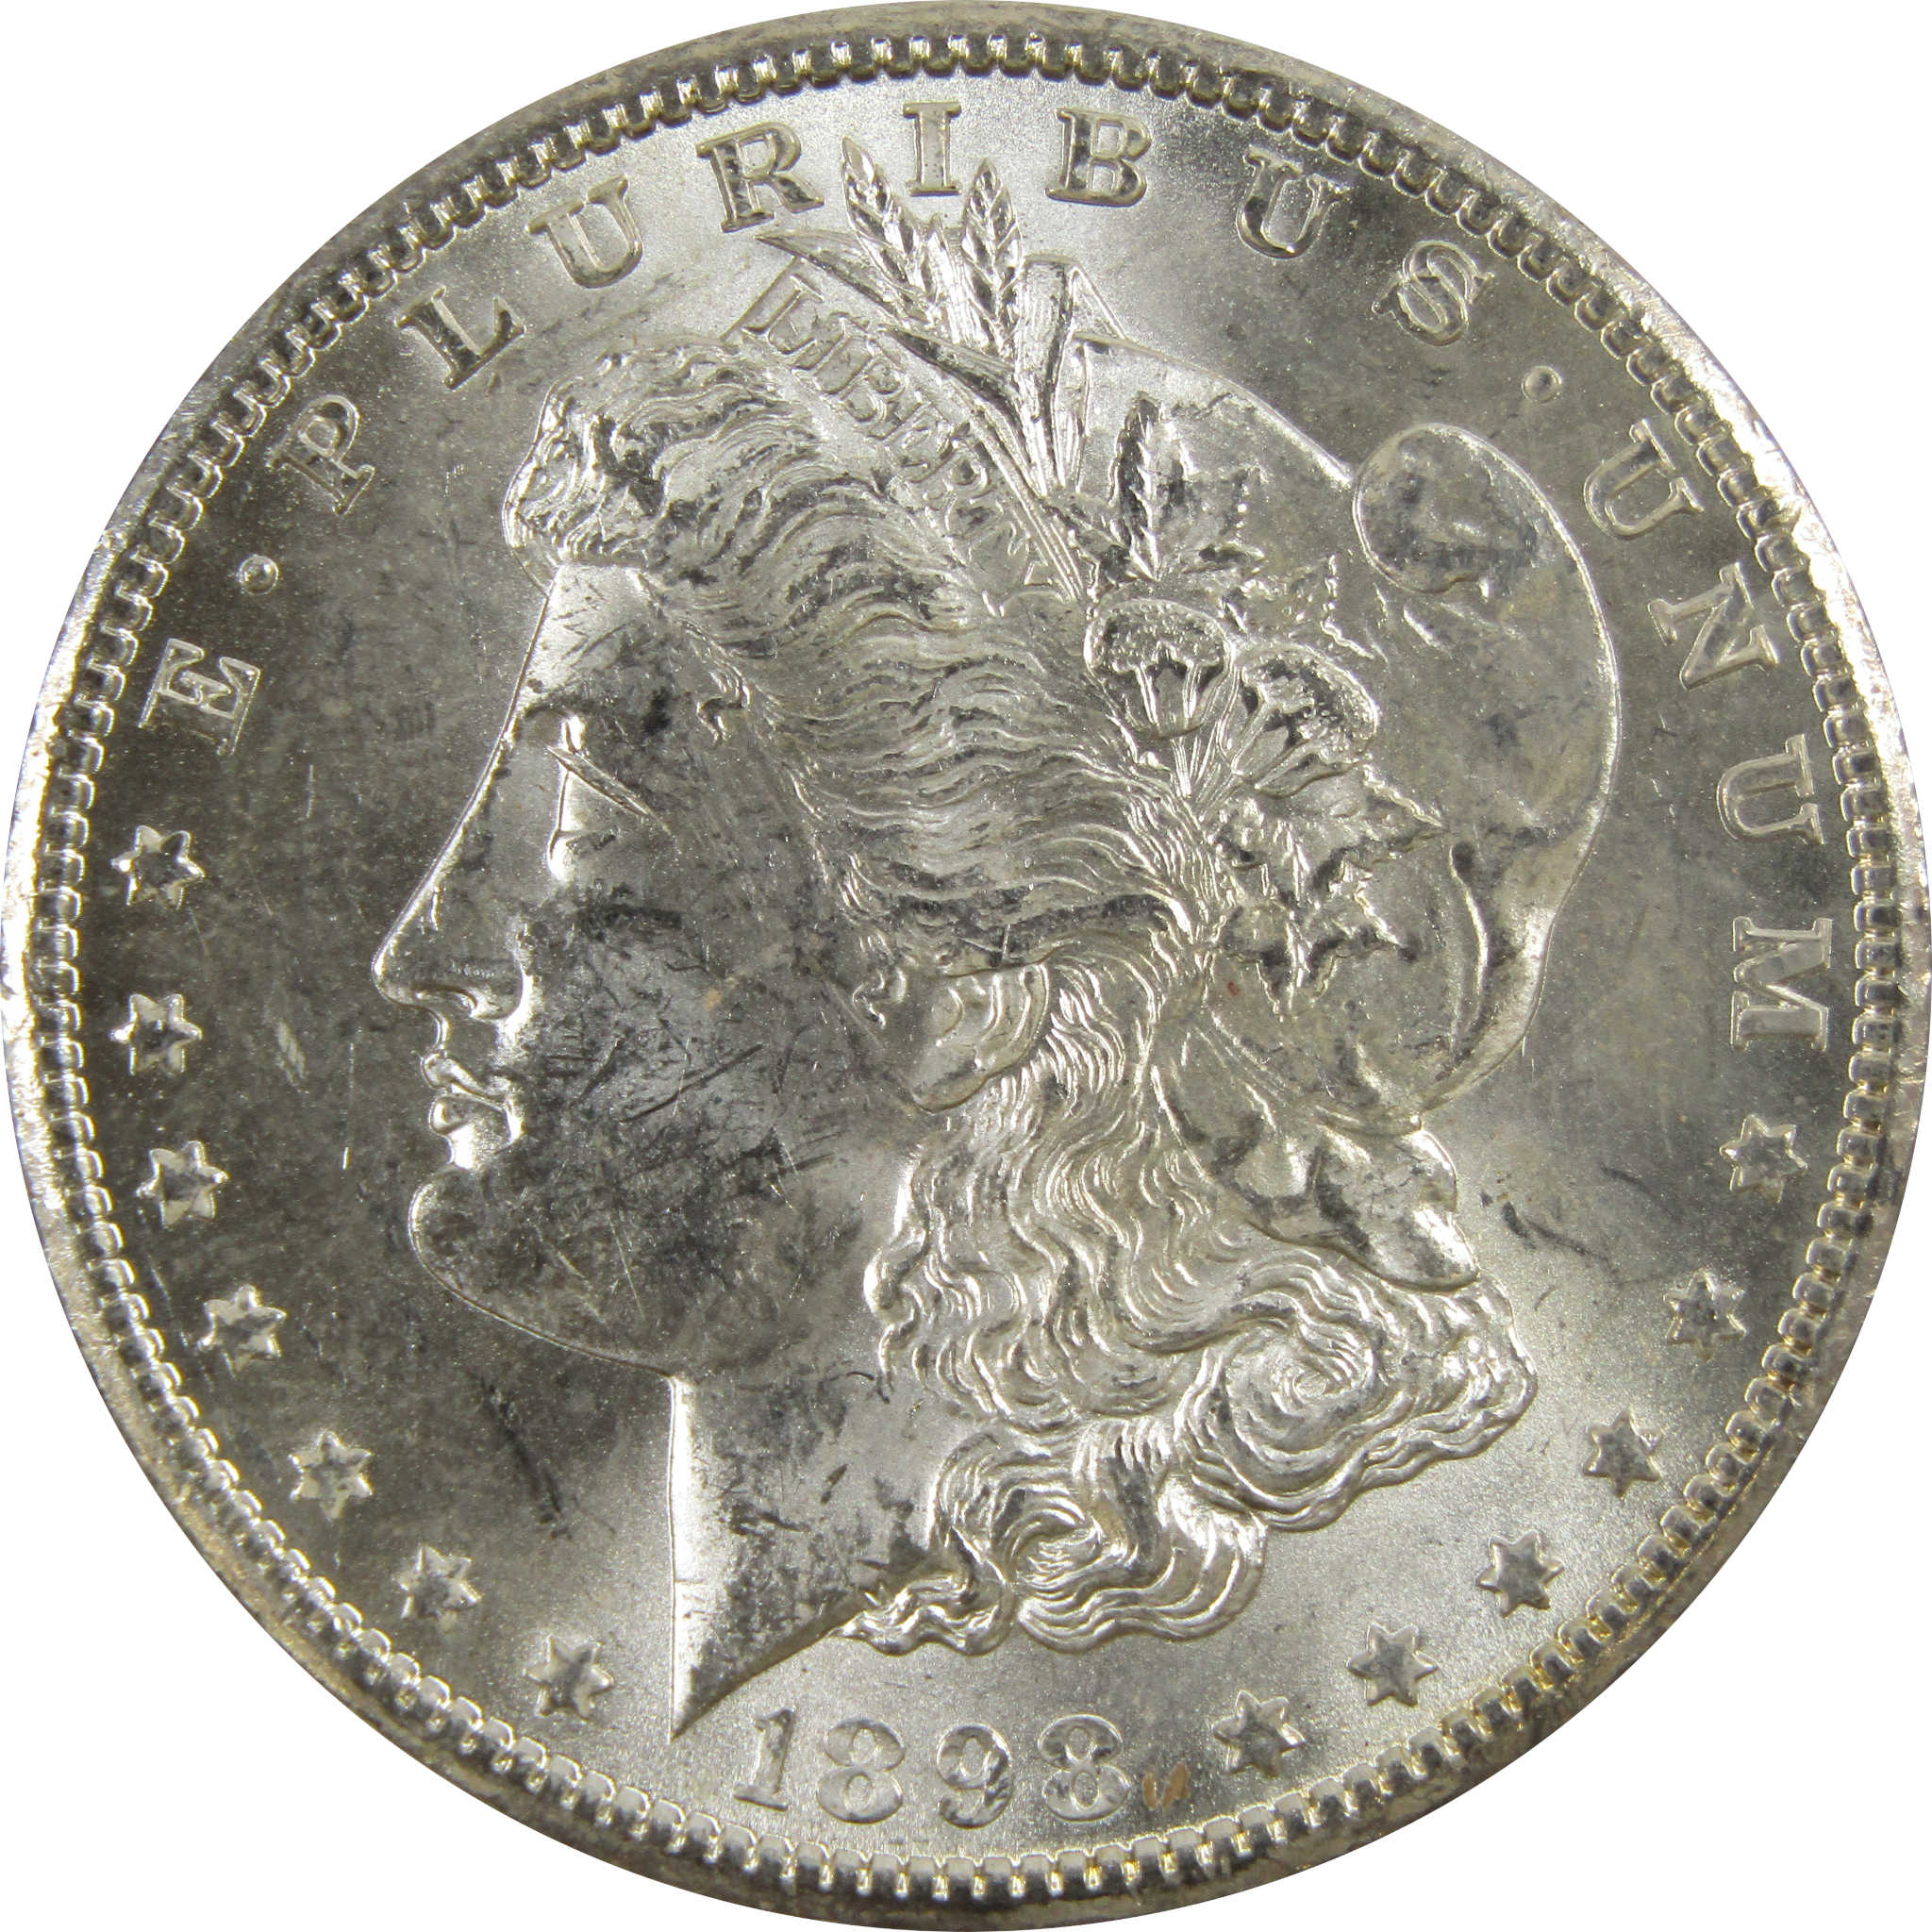 1898 O Morgan Dollar BU Uncirculated 90% Silver $1 Coin SKU:I5224 - Morgan coin - Morgan silver dollar - Morgan silver dollar for sale - Profile Coins &amp; Collectibles